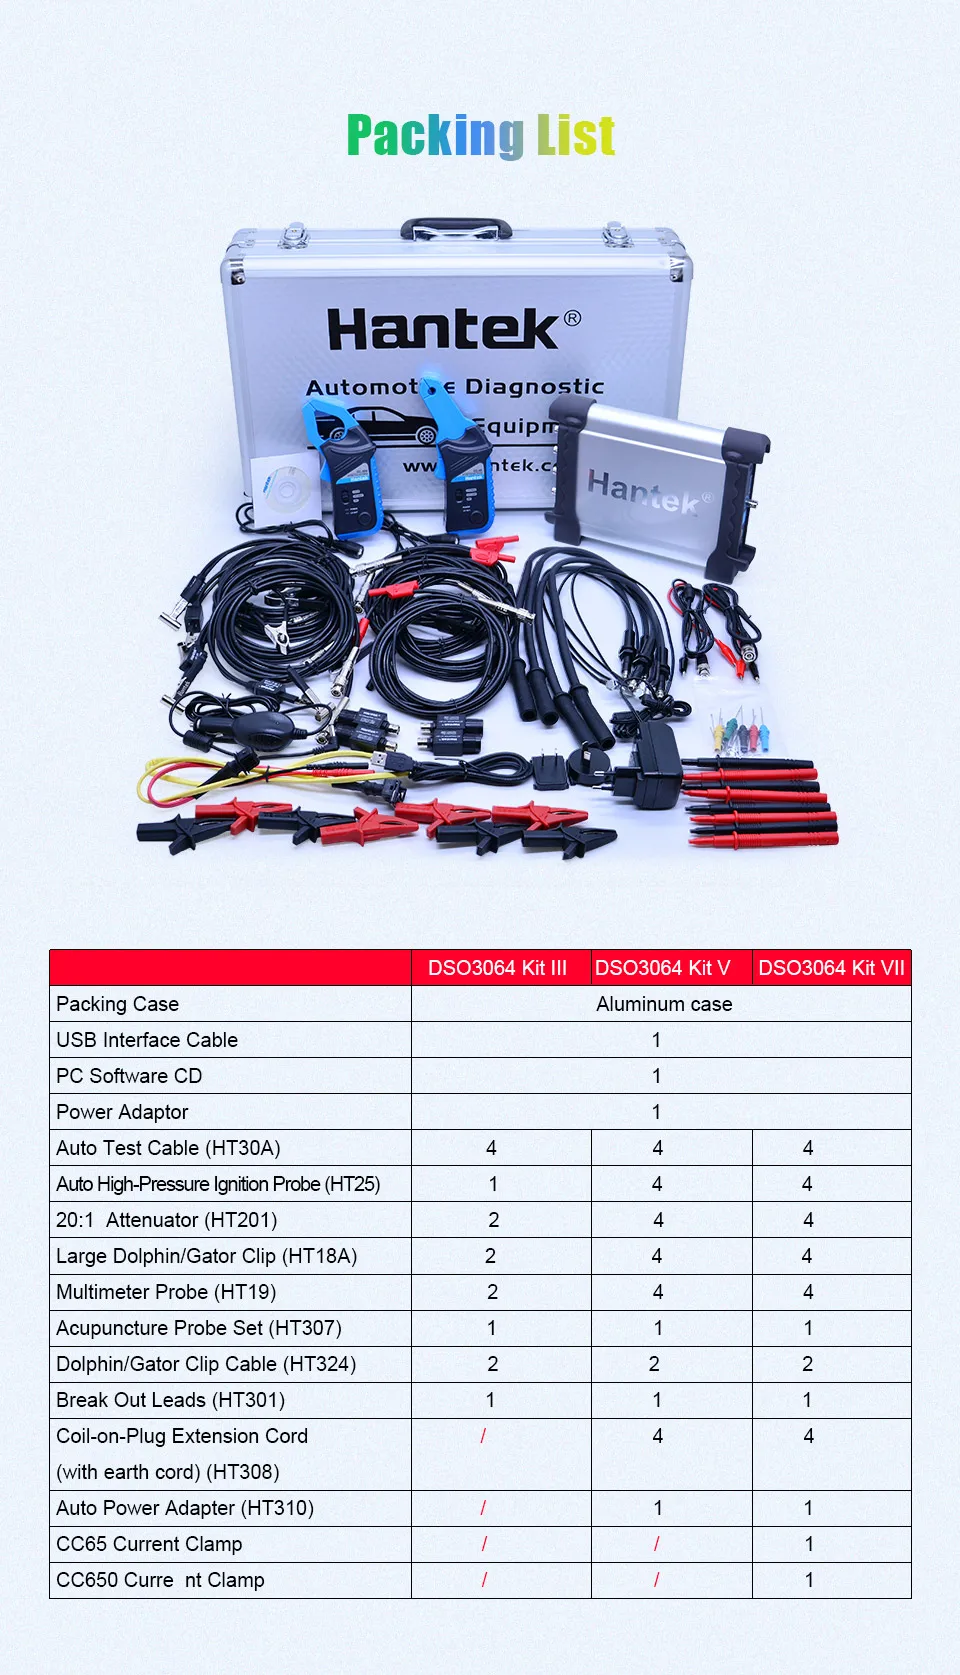 Hantek DSO3064 автомобильный осциллограф комплект для диагностики автомобиля 4 канала USB 2,0 200 мс/с 60 МГц счетчик Frenquency LAN опционально